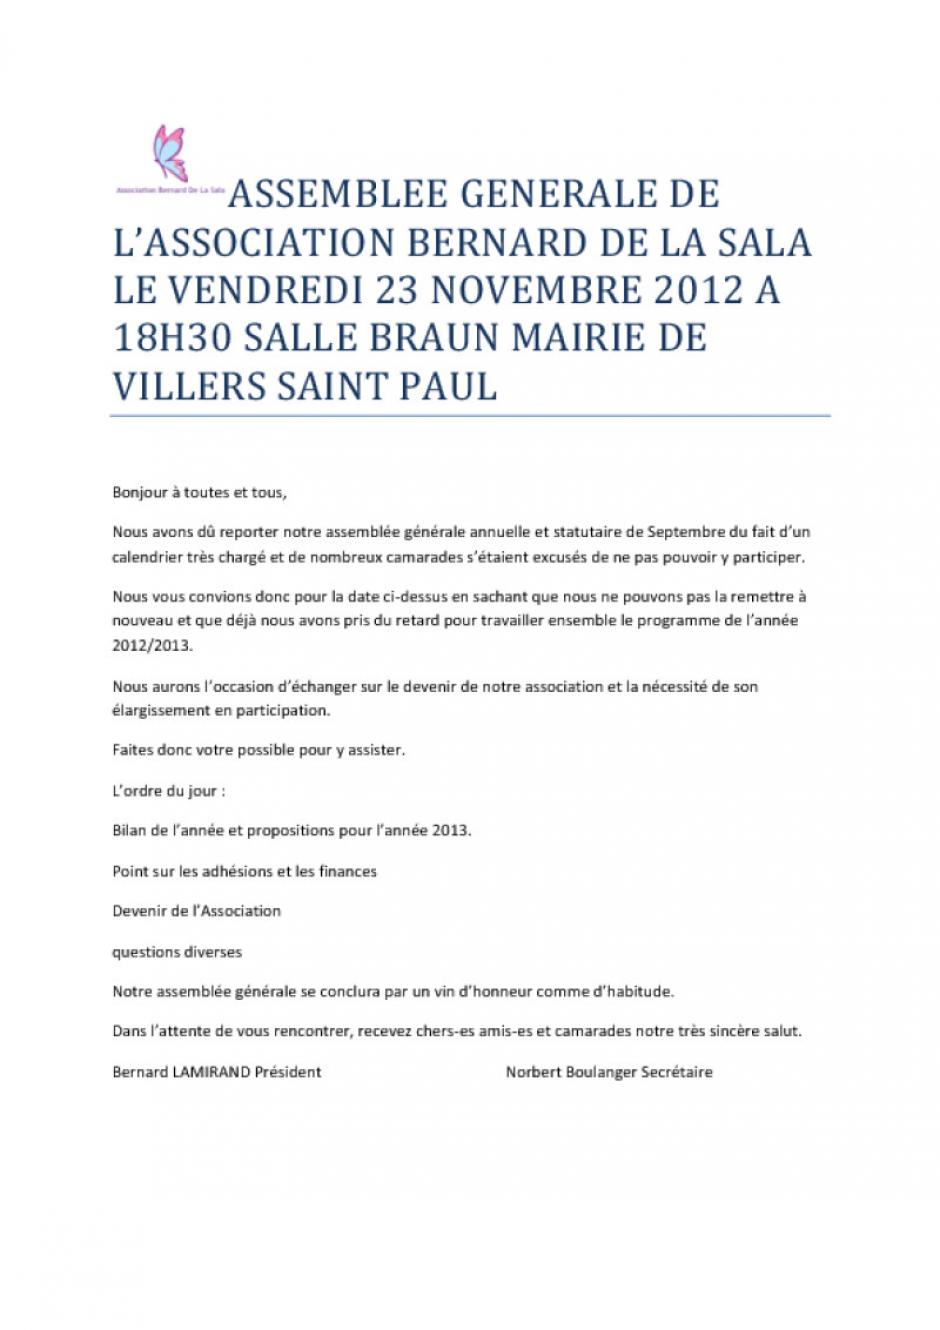 23 novembre, Villers-Saint-Paul - Association Bernard de La Sala-Assemblée générale